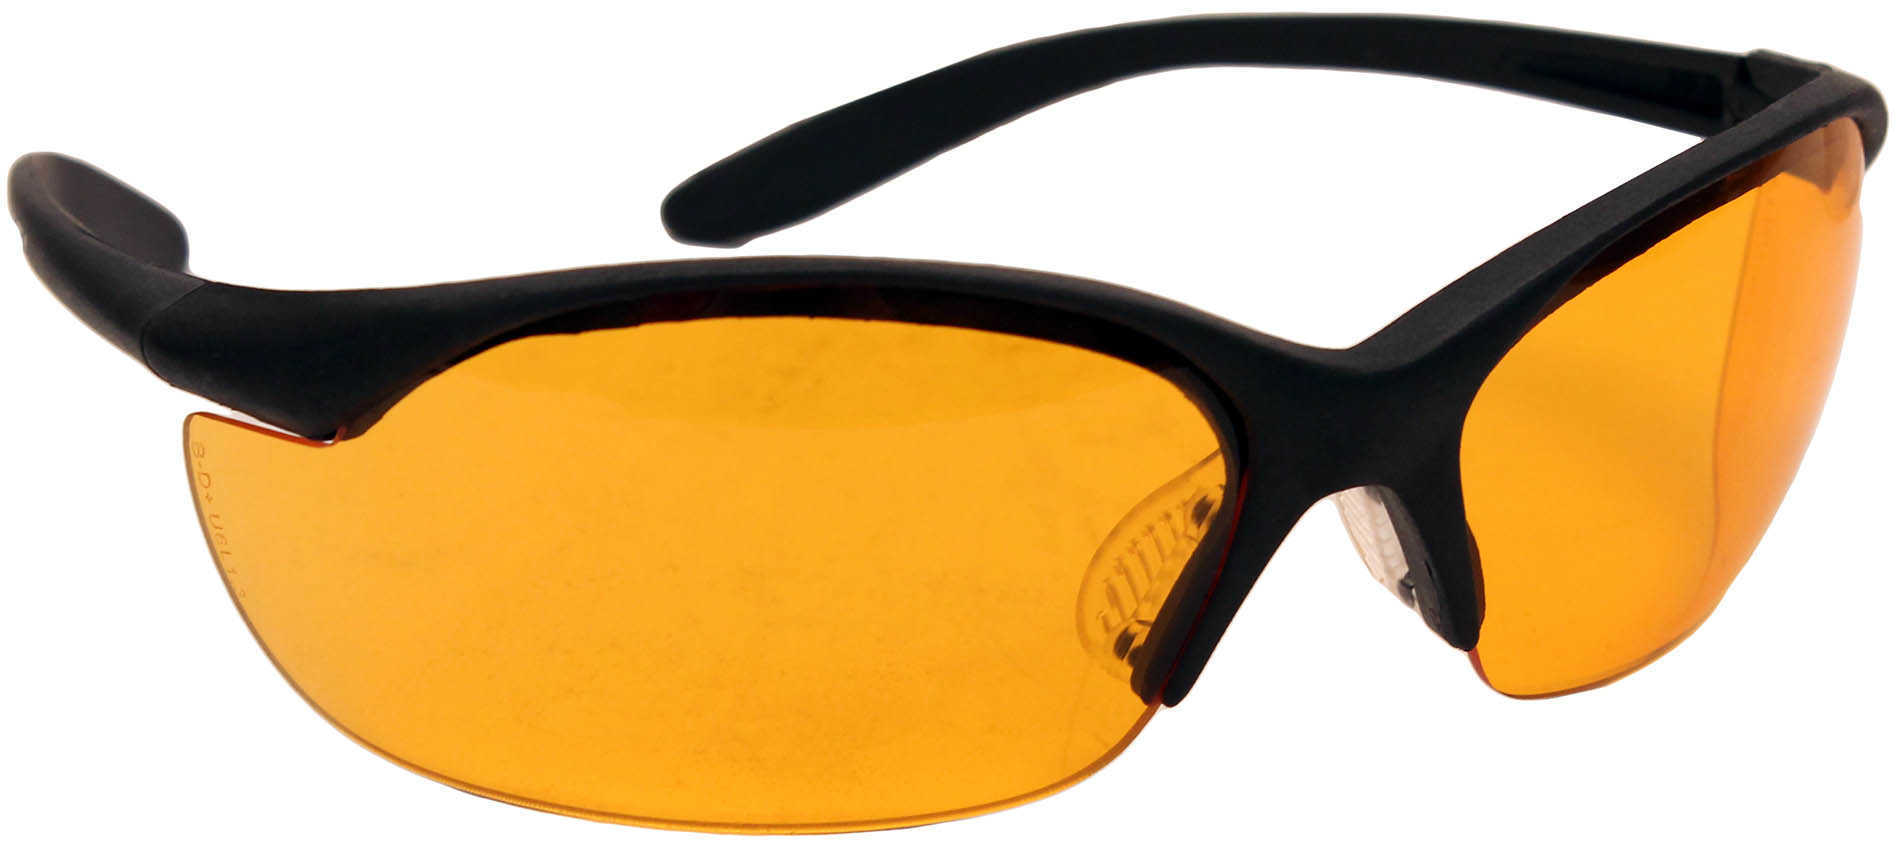 Howard Leight Vapor II Sharp-Shooter Glasses With Orange Lens & Black Frame Md: R01537